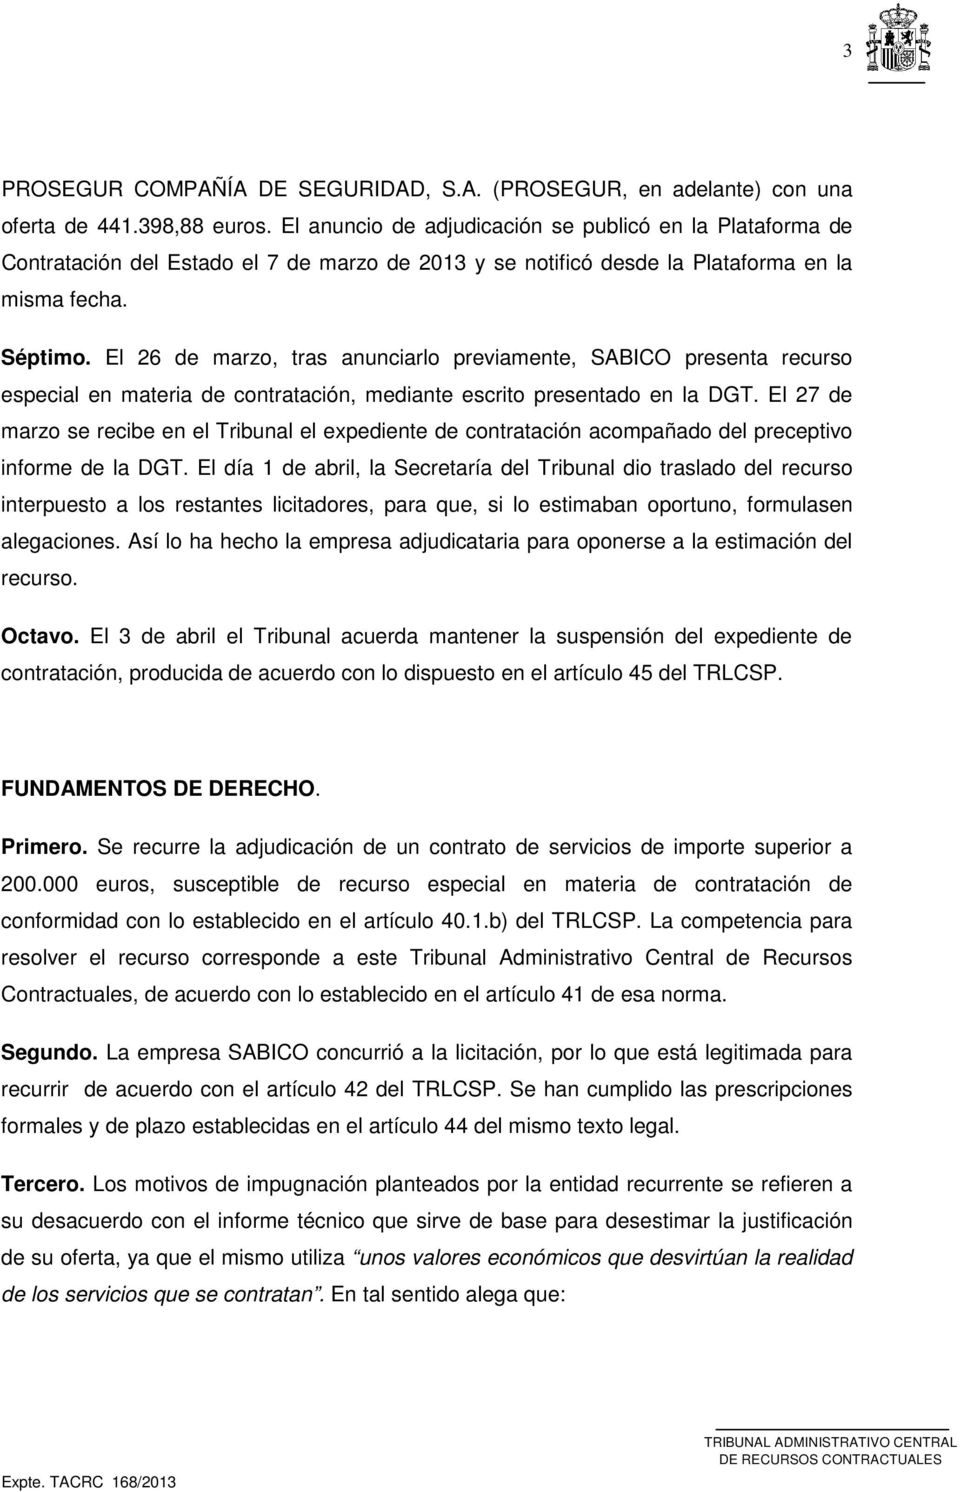 El 26 de marzo, tras anunciarlo previamente, SABICO presenta recurso especial en materia de contratación, mediante escrito presentado en la DGT.